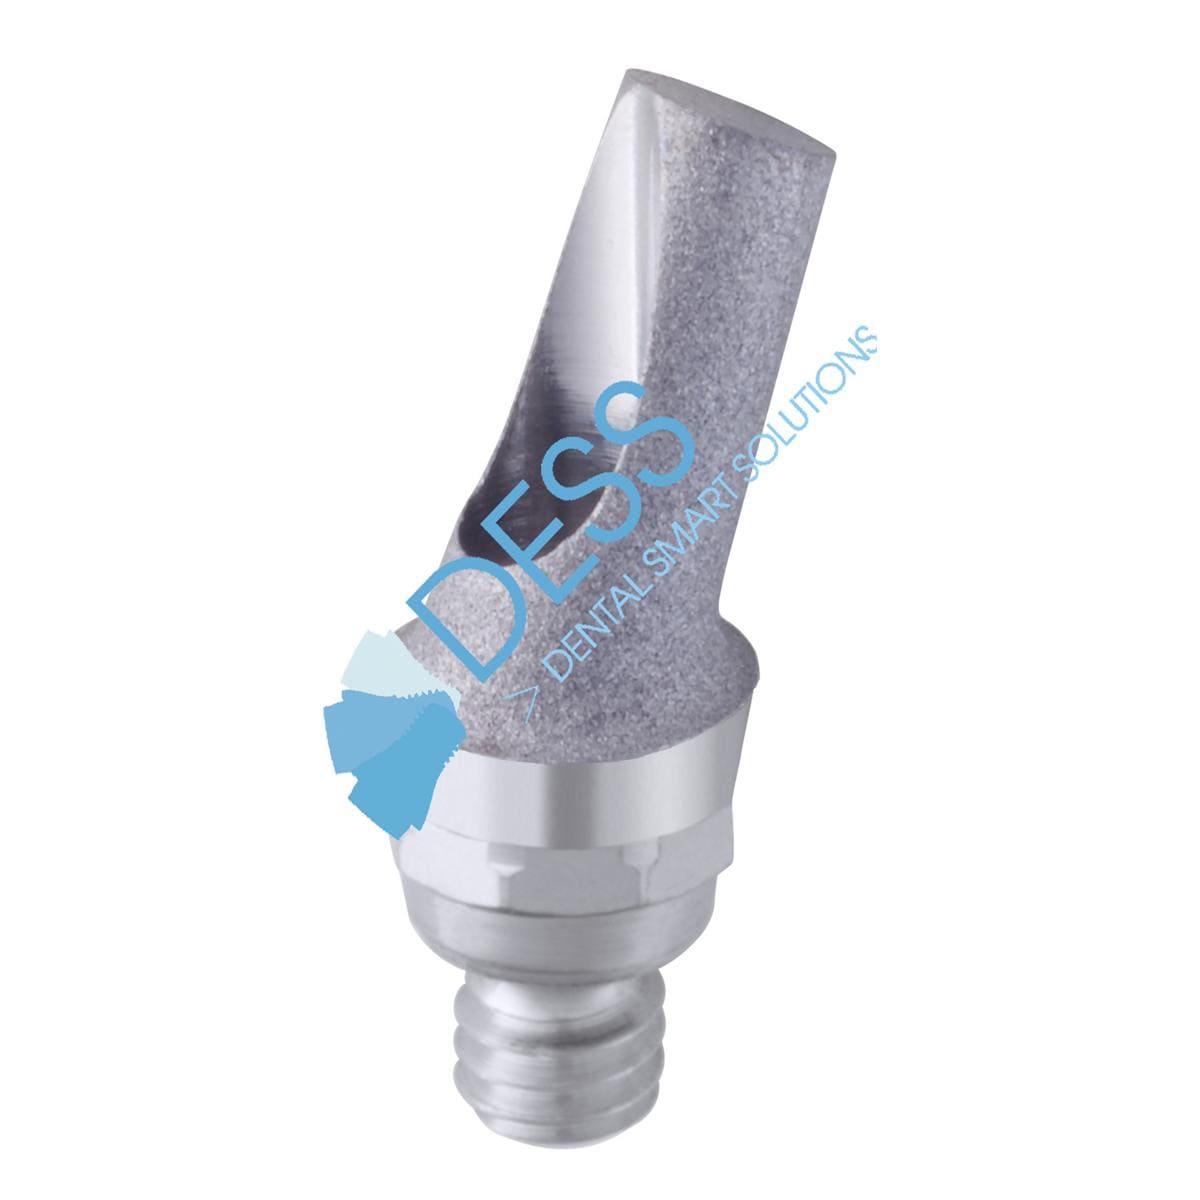 Titanabutment - kompatibel mit Straumann® - RN Ø 4,8 mm, 25° gewinkelt